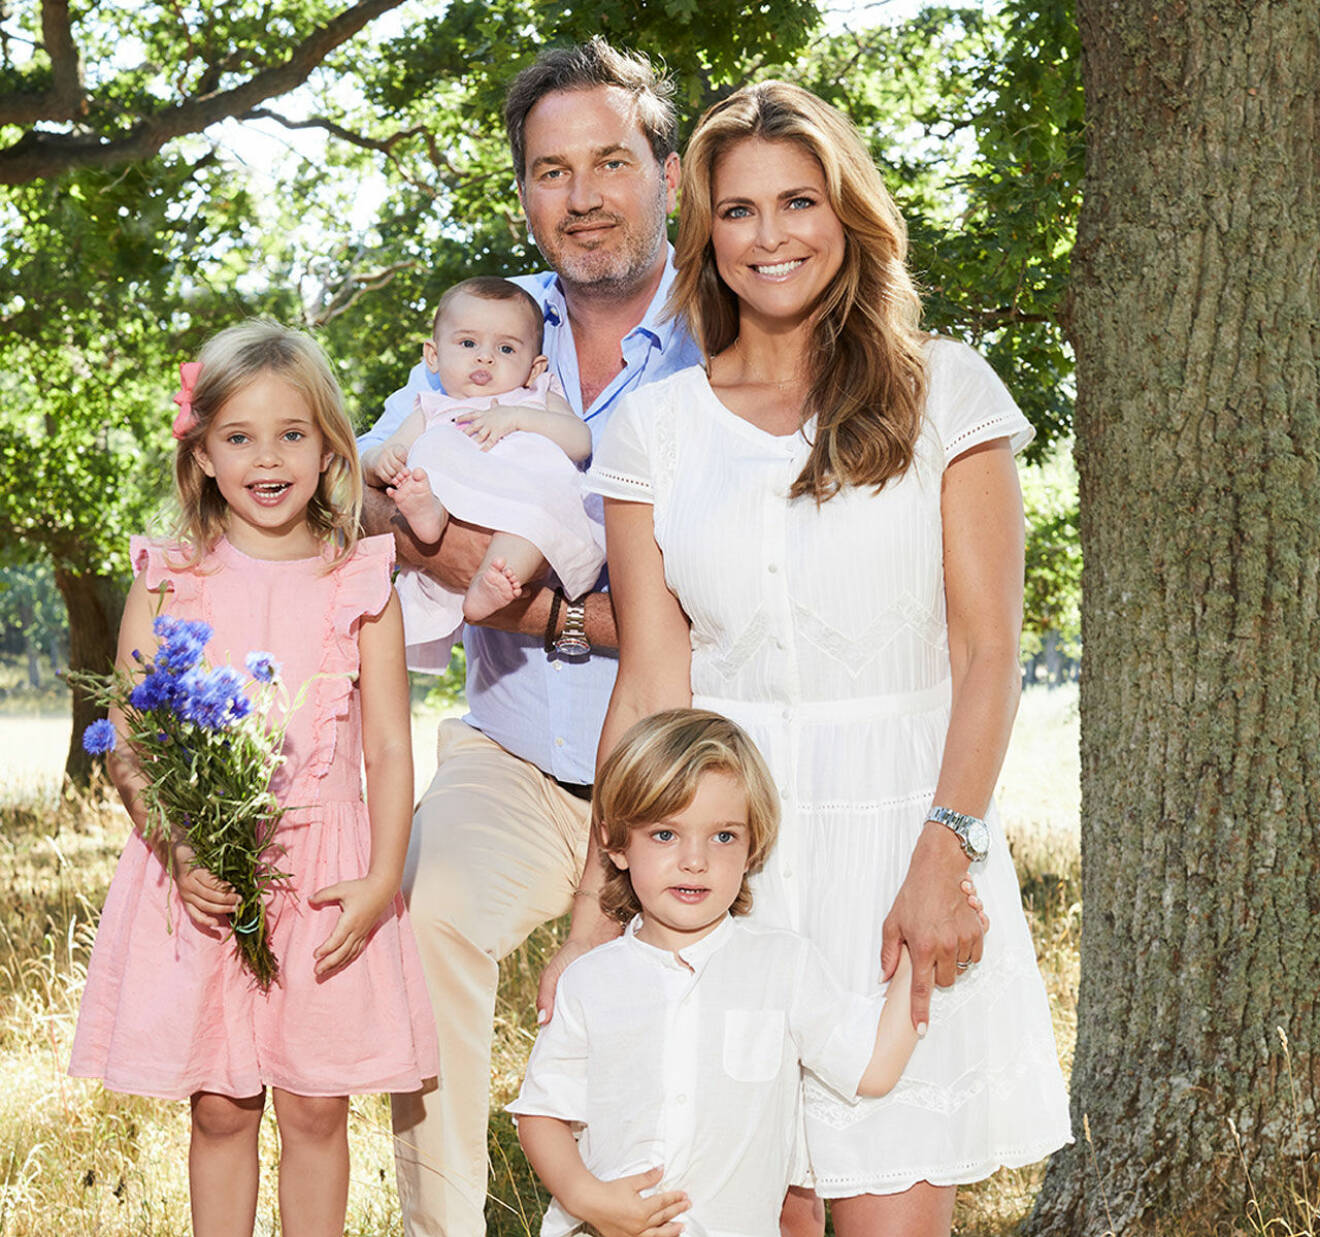 Prinsessan Madeleine och hennes familj: Chris, prinsessan Leonore, prins Nicolas och prinsessan Adrienne.